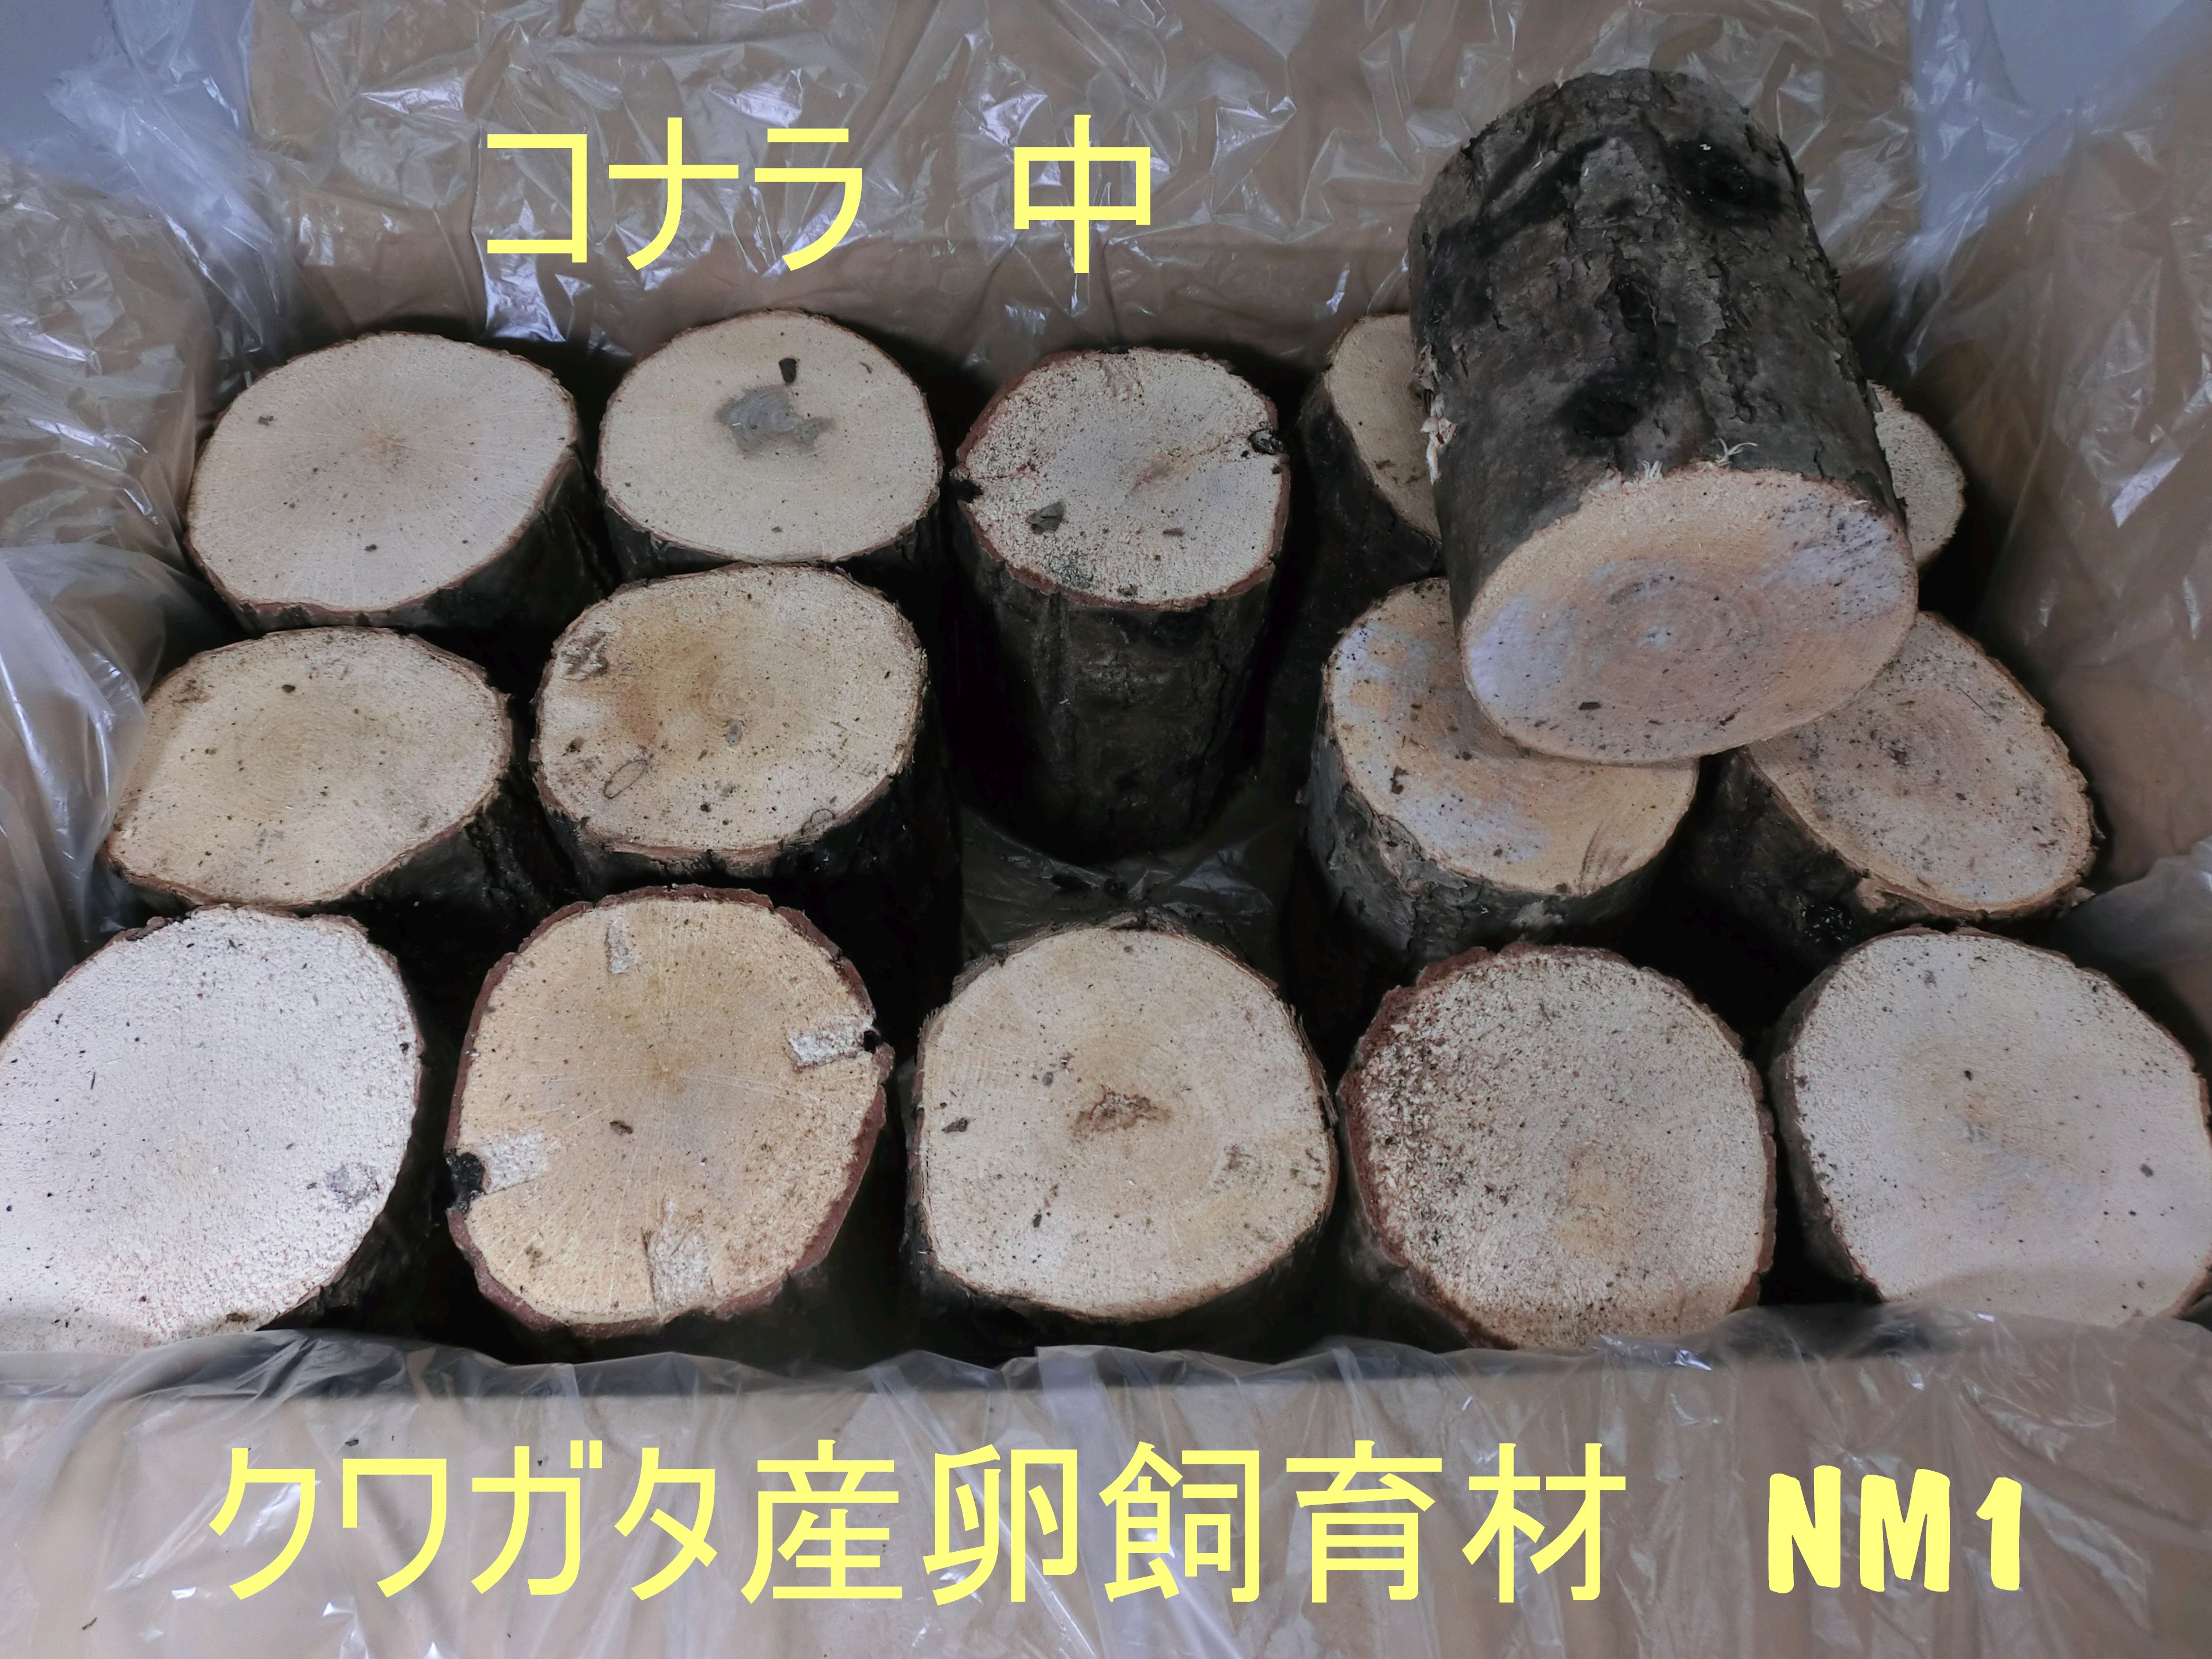 オオクワガタ産卵木NM1 コナラ中やや硬め 農薬不使用 国産原木使用 箱入り（14～17本で本数指定可能）長さ約14cm 太さ9～11cm